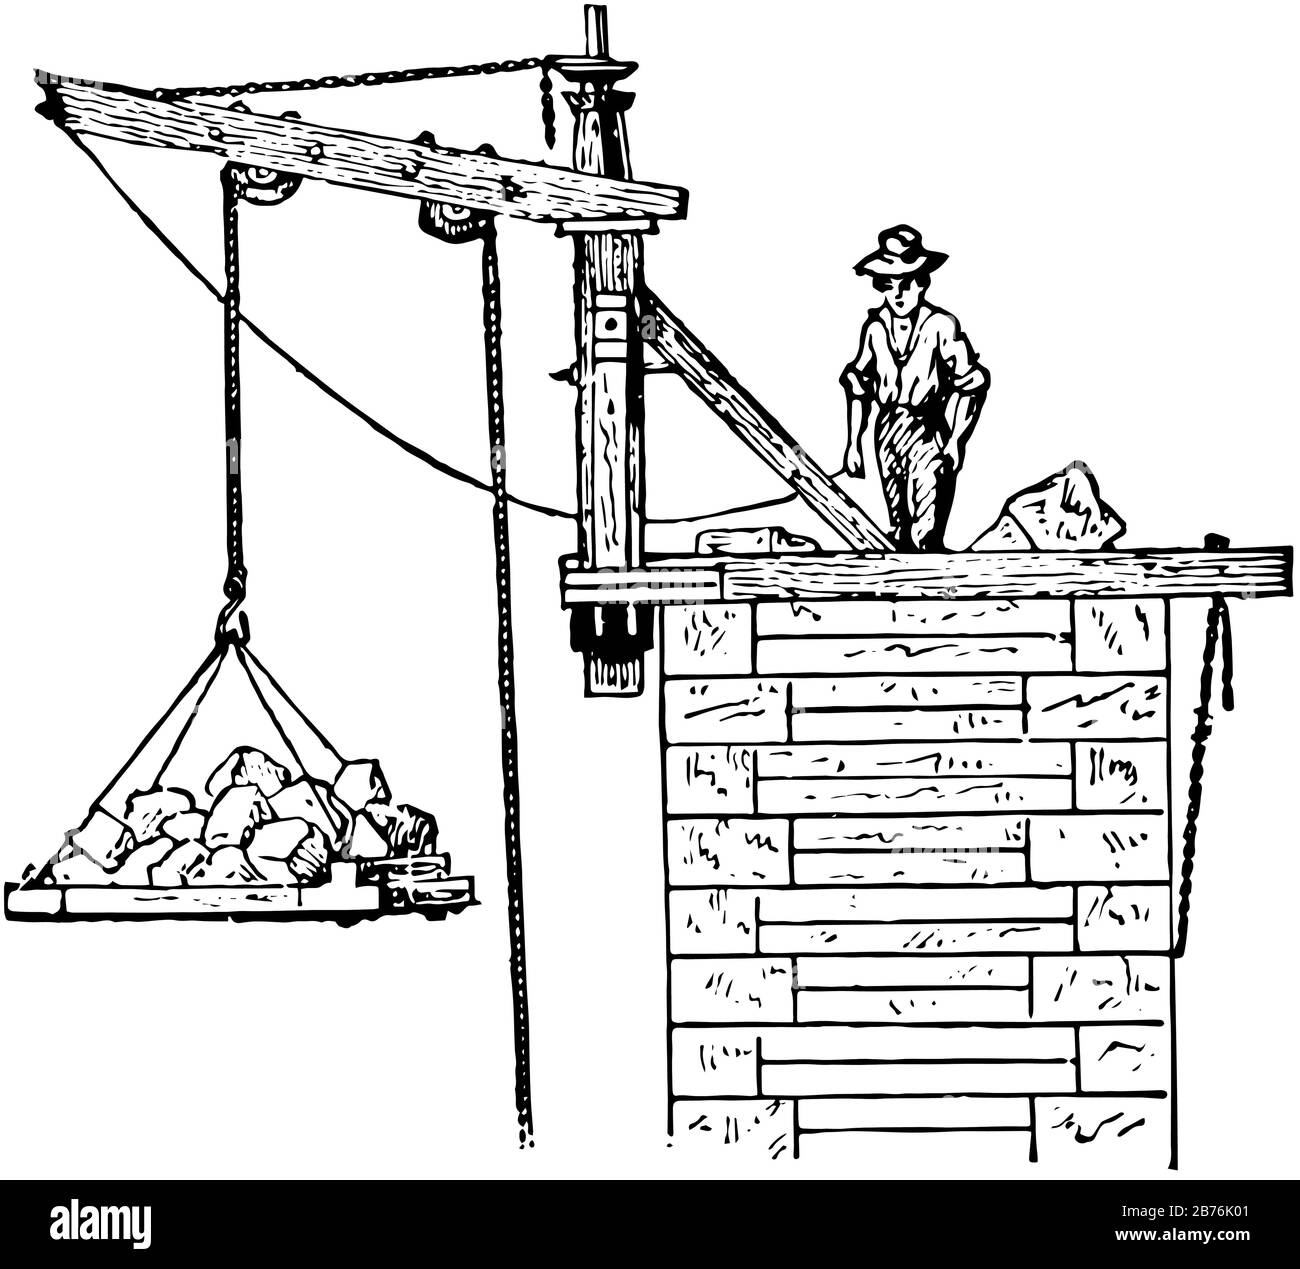 Questa illustrazione rappresenta la gru Di Appoggio che viene utilizzata nella costruzione di moli e torri, nel disegno di linee vintage o nell'illustrazione di incisioni. Illustrazione Vettoriale